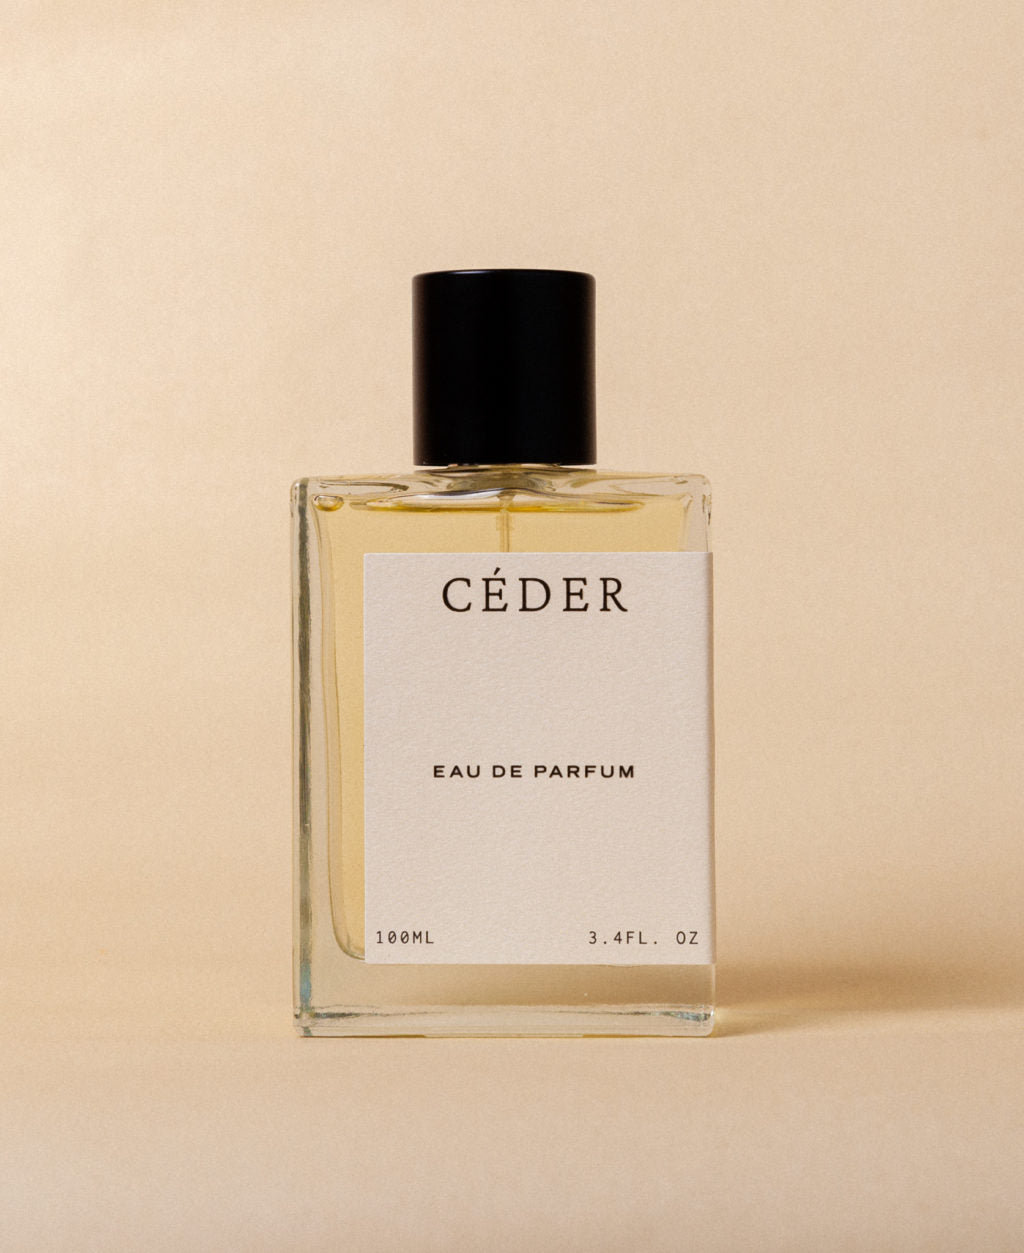 Loess Perfume Cèder